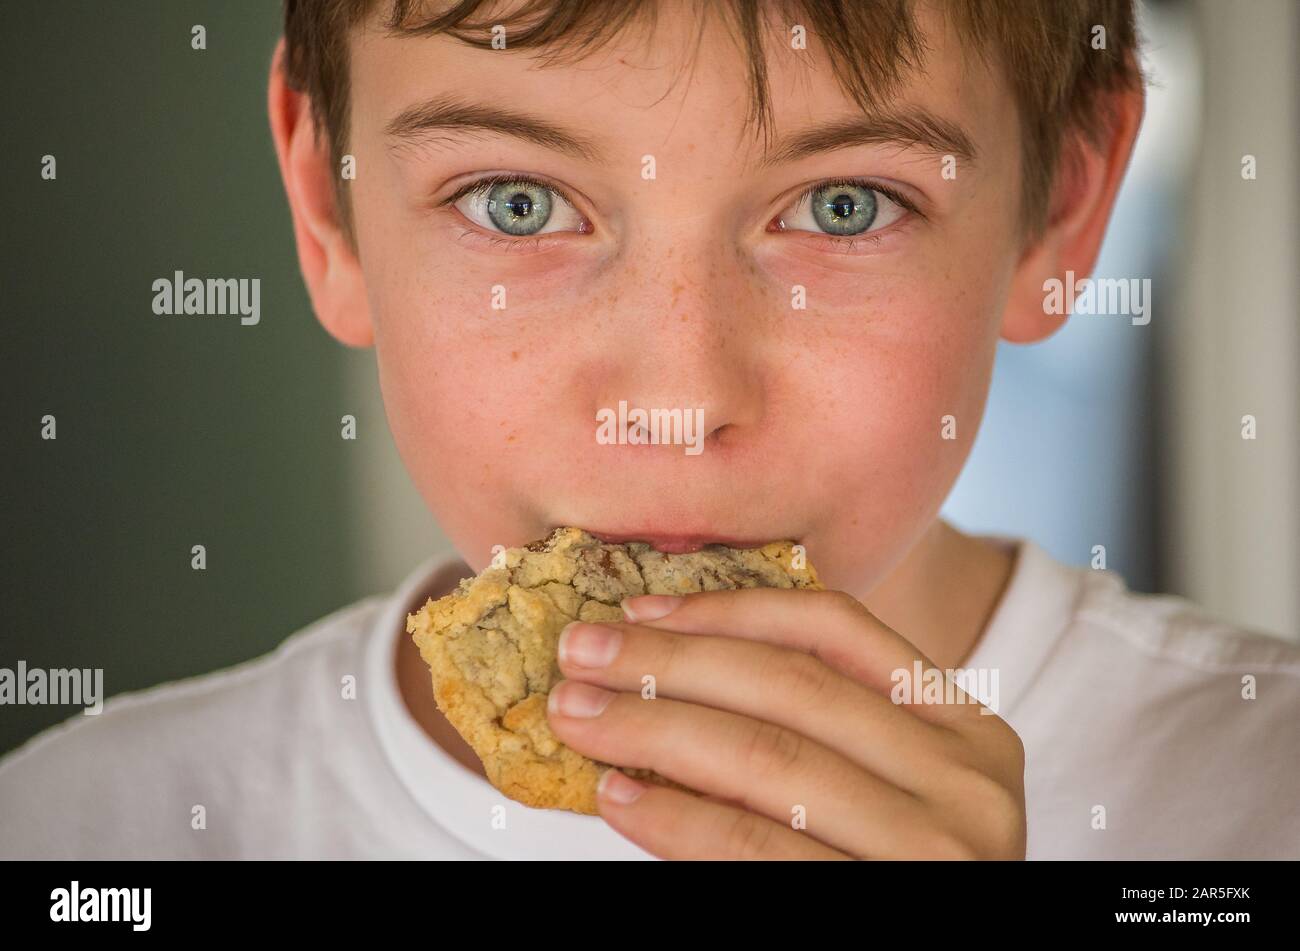 Kleiner Junge, der ein Plätzchen isst, während er direkt auf die Kamera blickt Stockfoto